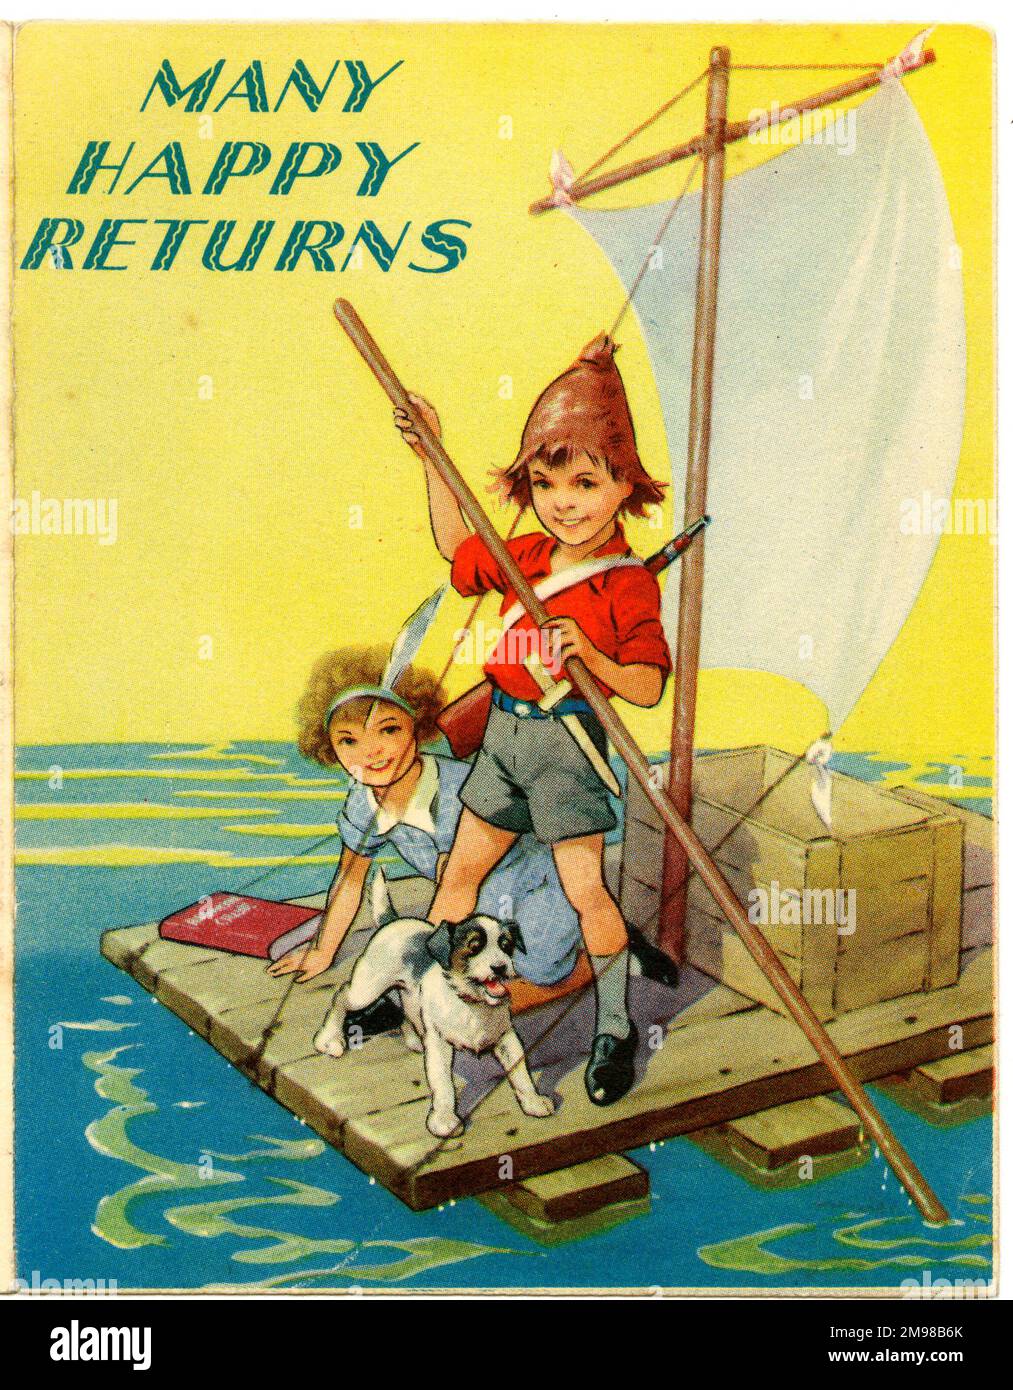 Geburtstagskarte, Many Happy Returns - Junge, Mädchen und Hund auf einem Floß. Stockfoto